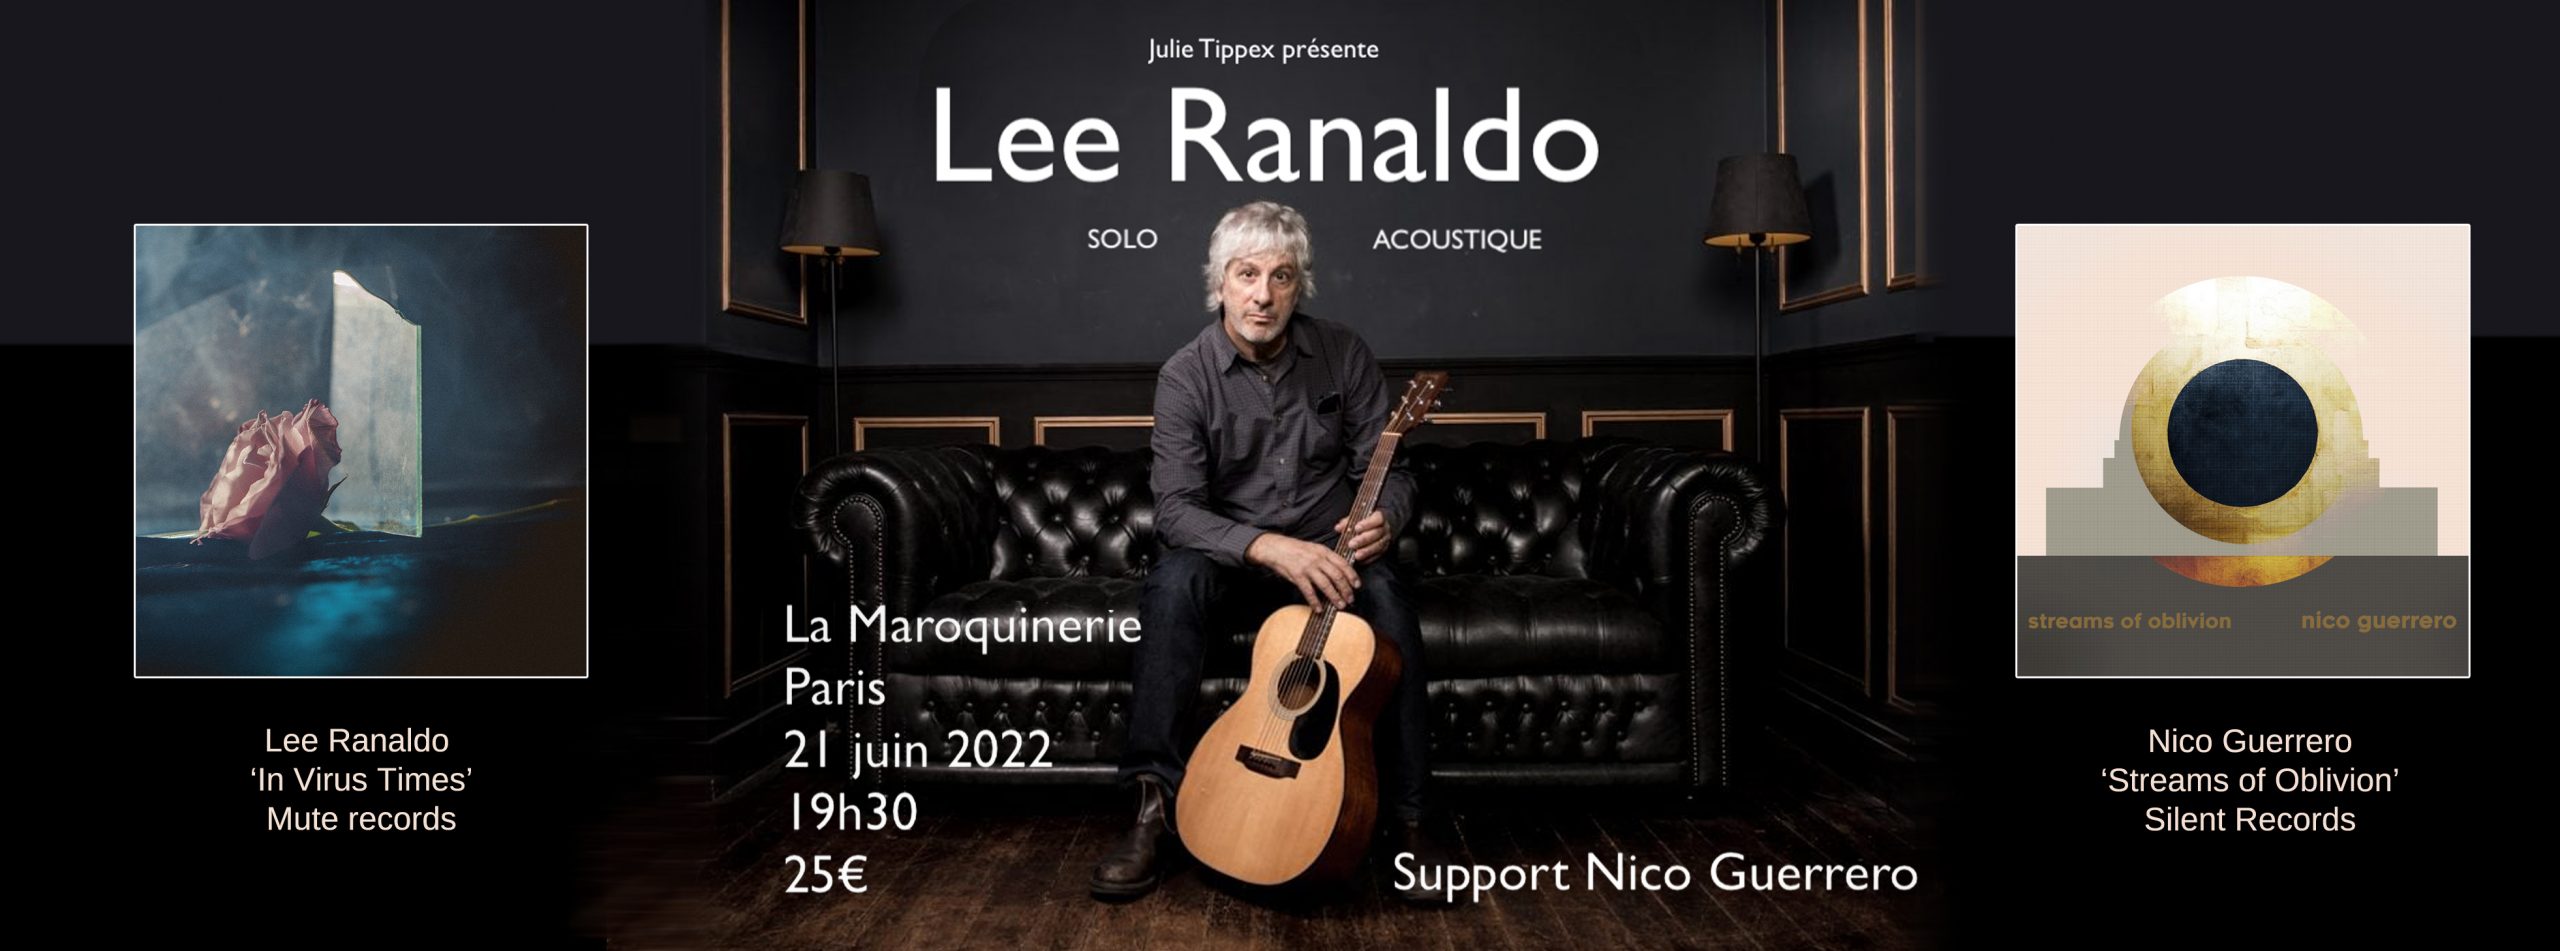 Nico Guerrero opening for Lee Ranaldo | Maroquinerie, Paris | June 21 2022